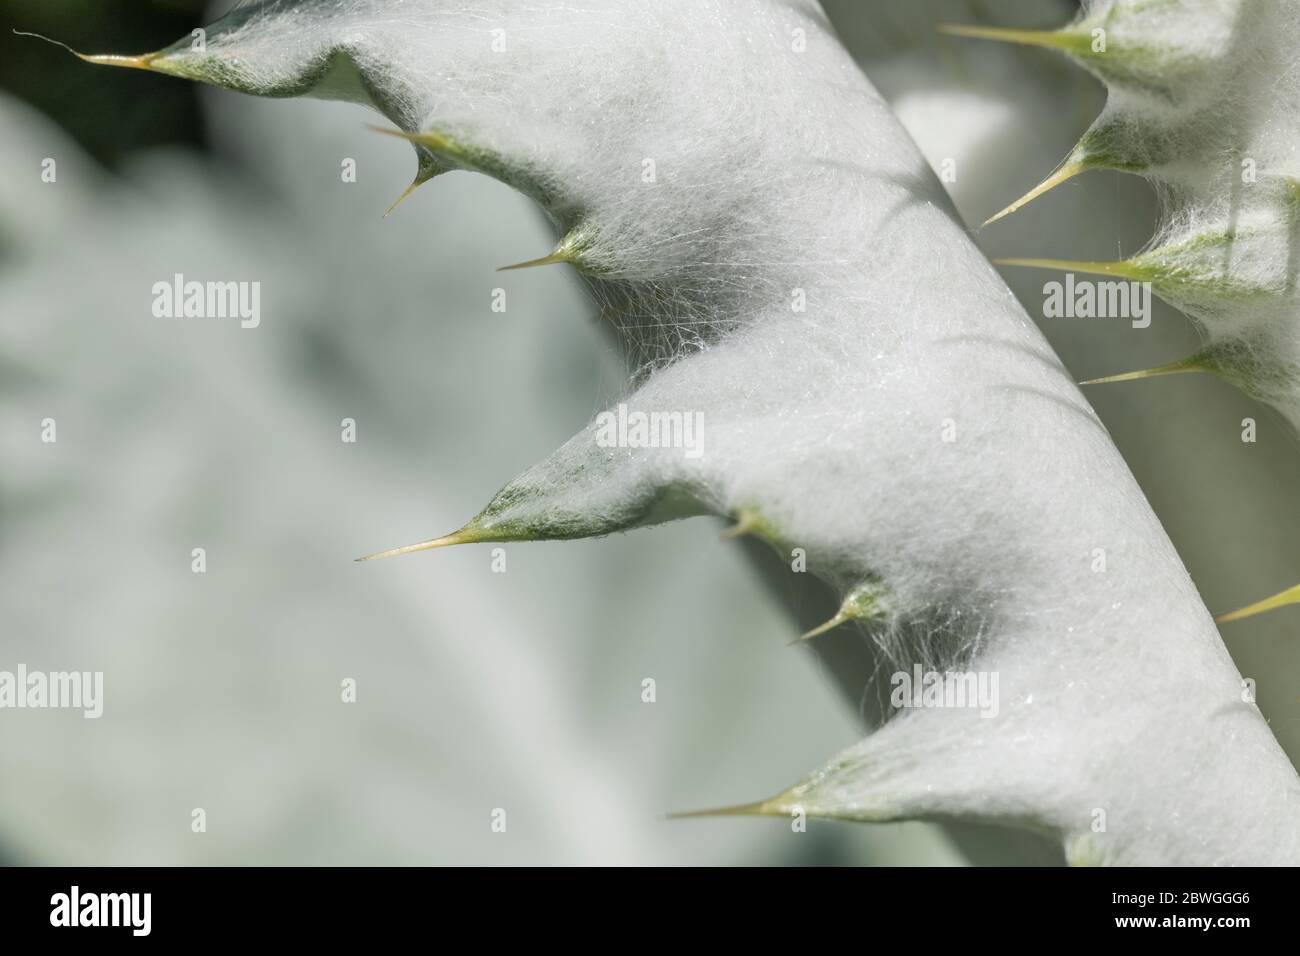 Foglie grandi e prickles taglienti del Thistle di cotone / Onopordum acanthium in sole luminoso. La copertura di lana conferisce un aspetto bianco. Foto Stock